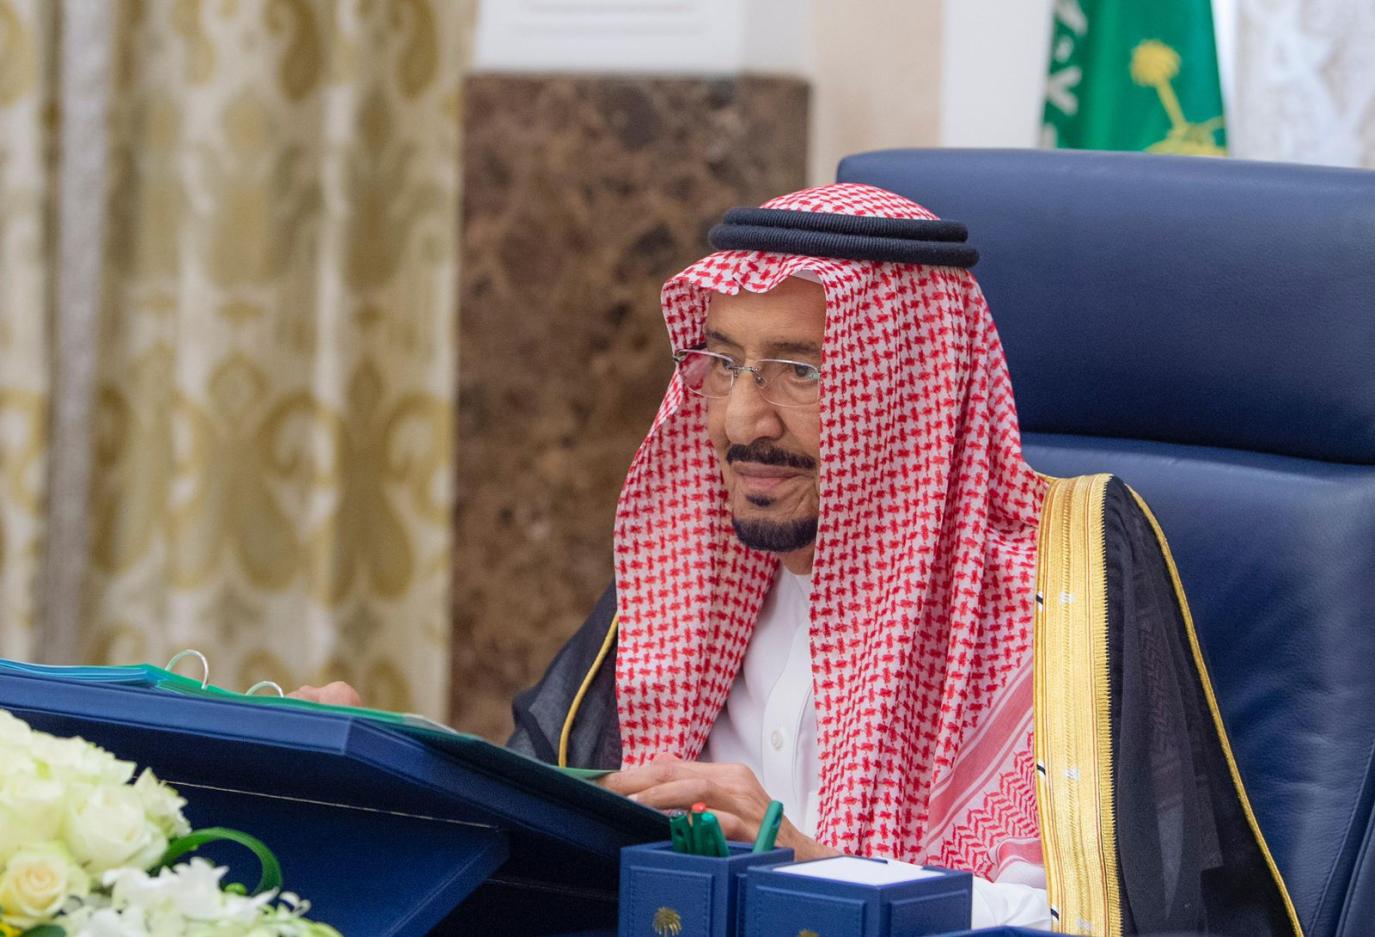 ملخص قرارات مجلس الوزراء السعودي اليوم: الموافقة على نظام “حماية المبلّغين والشهود”